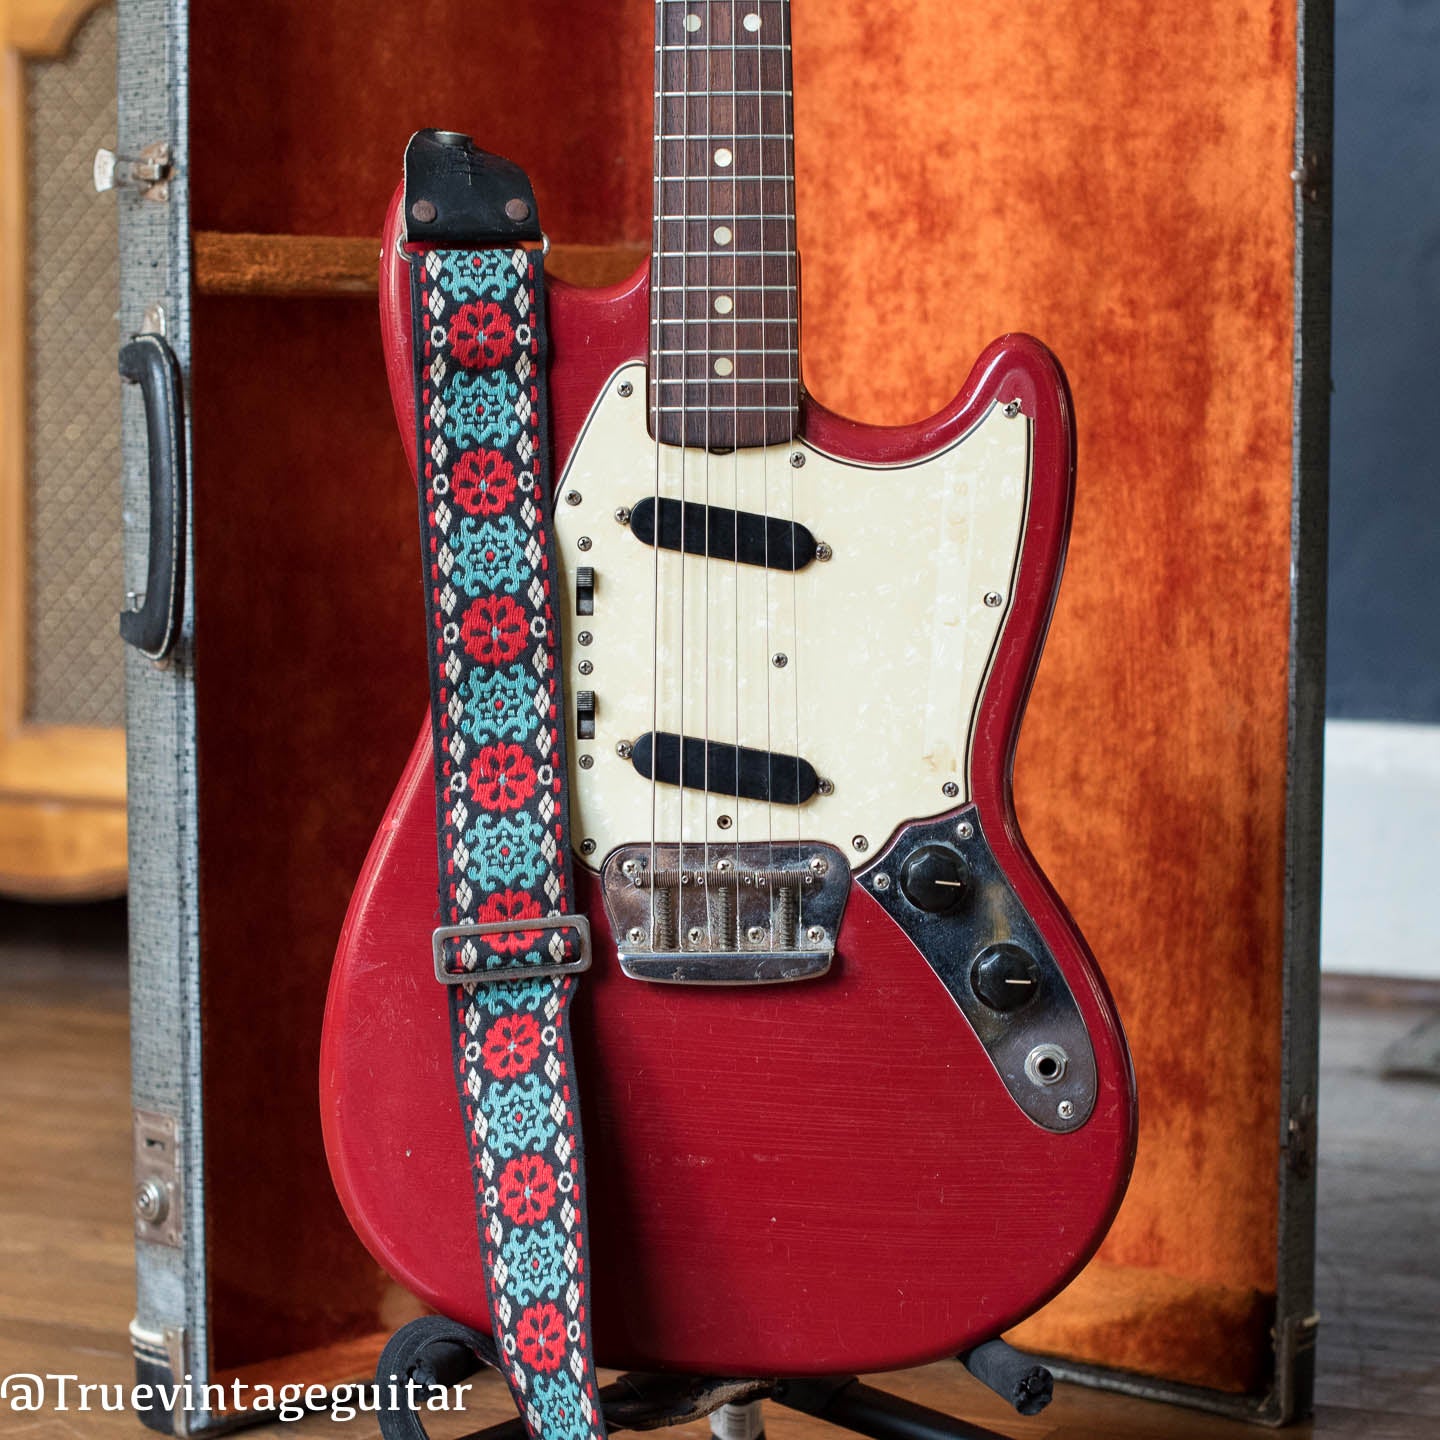 Vintage Fender electric guitar red 1960s